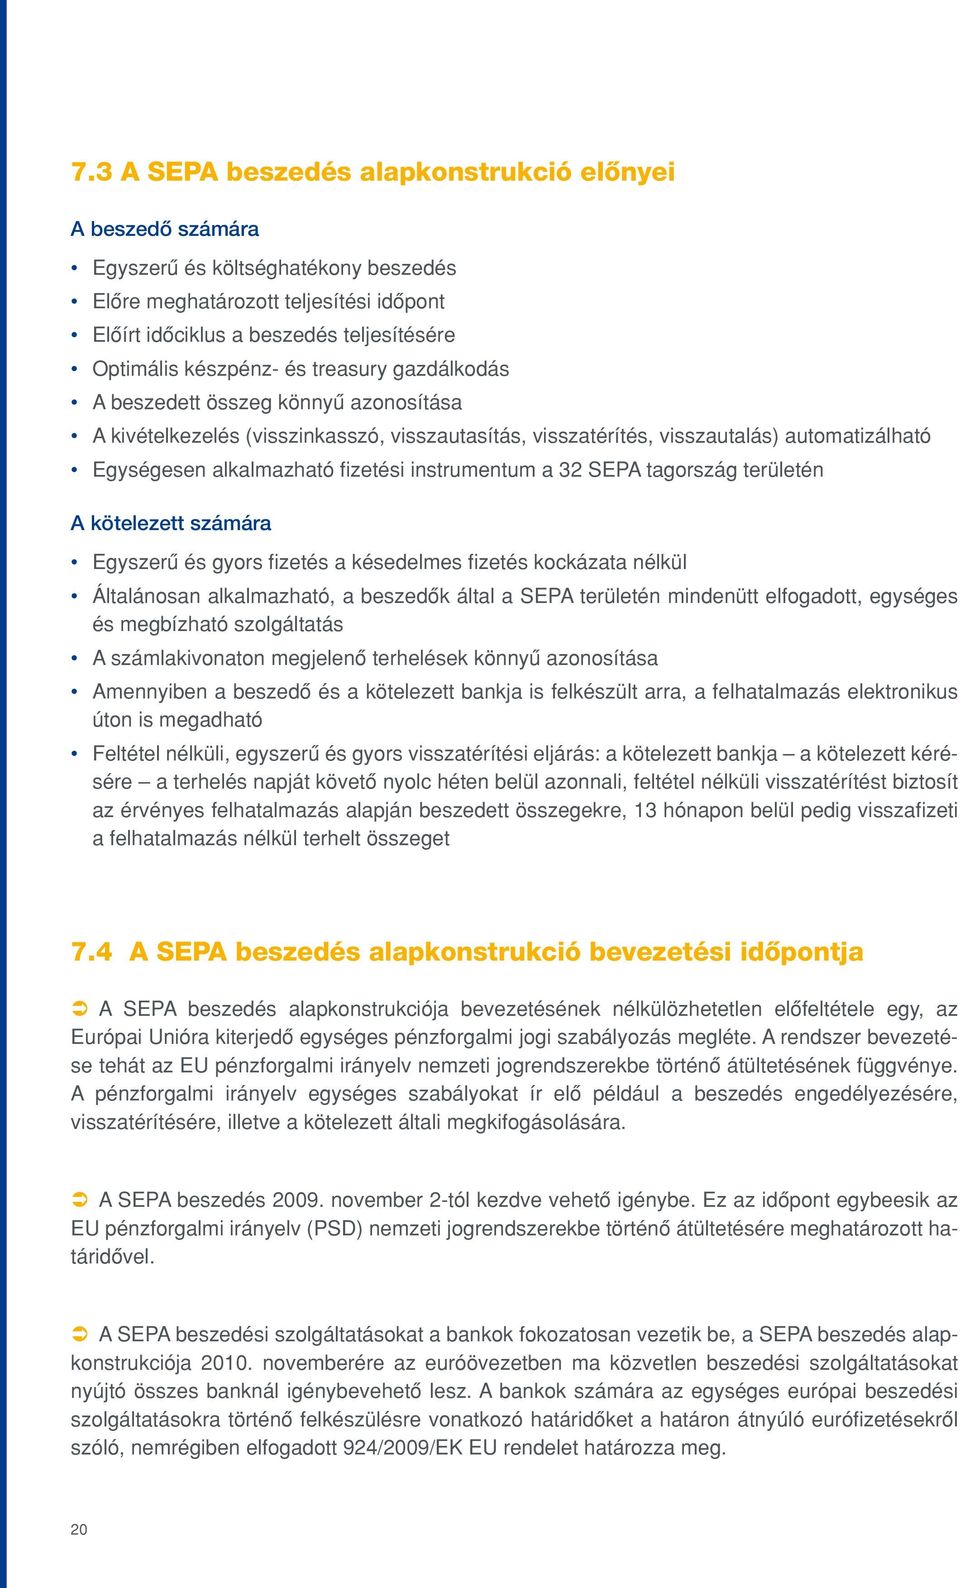 instrumentum a 32 SEPA tagország területén A kötelezett számára Egyszerû és gyors fizetés a késedelmes fizetés kockázata nélkül Általánosan alkalmazható, a beszedôk által a SEPA területén mindenütt